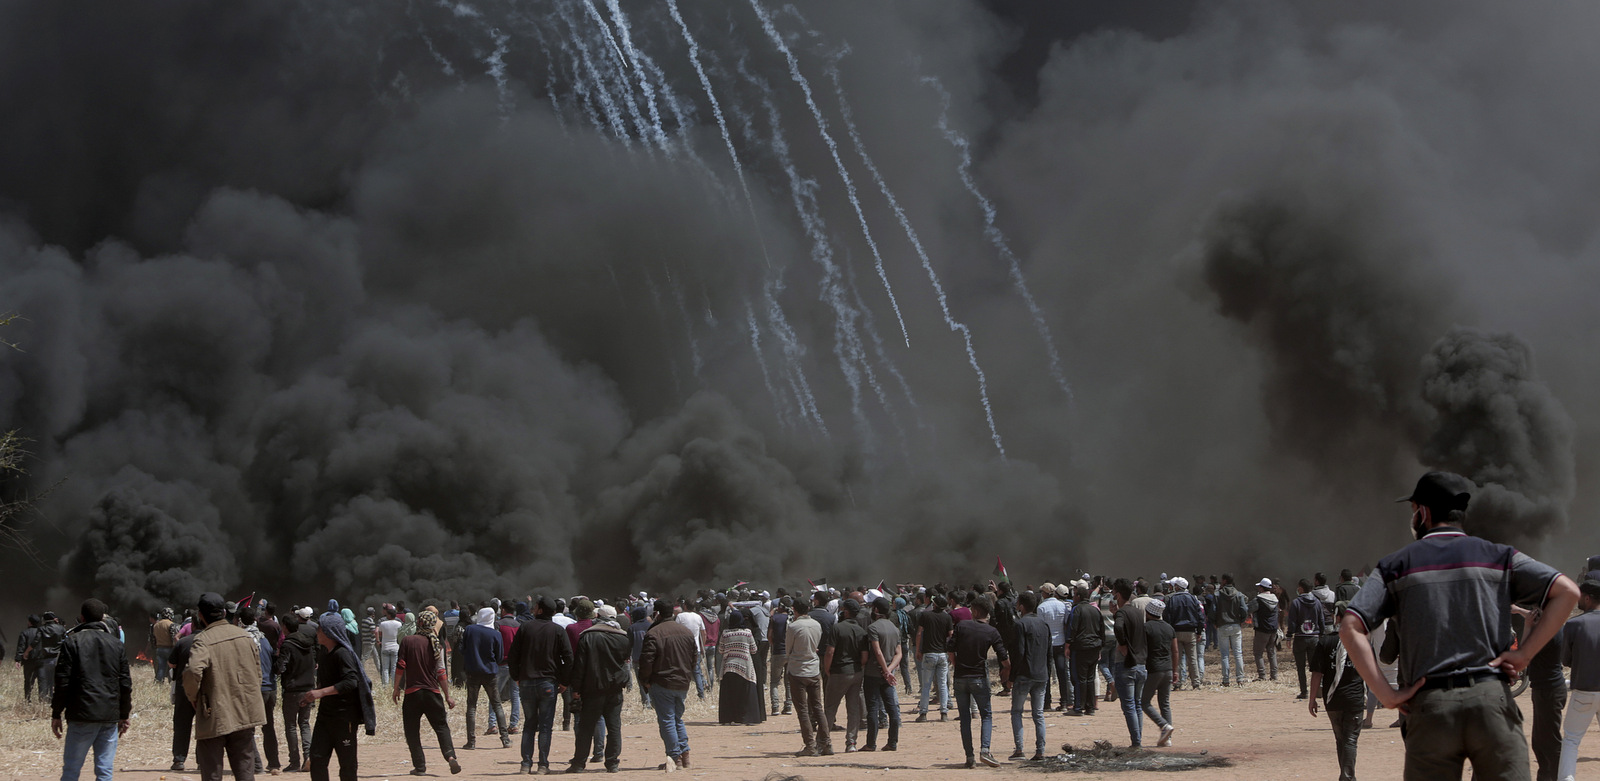 2018年4月6日星期五，在加沙与以色列边界沿线与以色列军队发生冲突期间，以色列士兵开枪射击催泪瓦斯。周五，巴勒斯坦人在加沙与以色列边界附近焚烧了一堆轮胎，发出巨大的黑烟在一个星期内在挥发性地区发生的第二次大型抗议活动中，引发了以色列大火，造成一名男子死亡。 （AP Photo / Adel Hana）